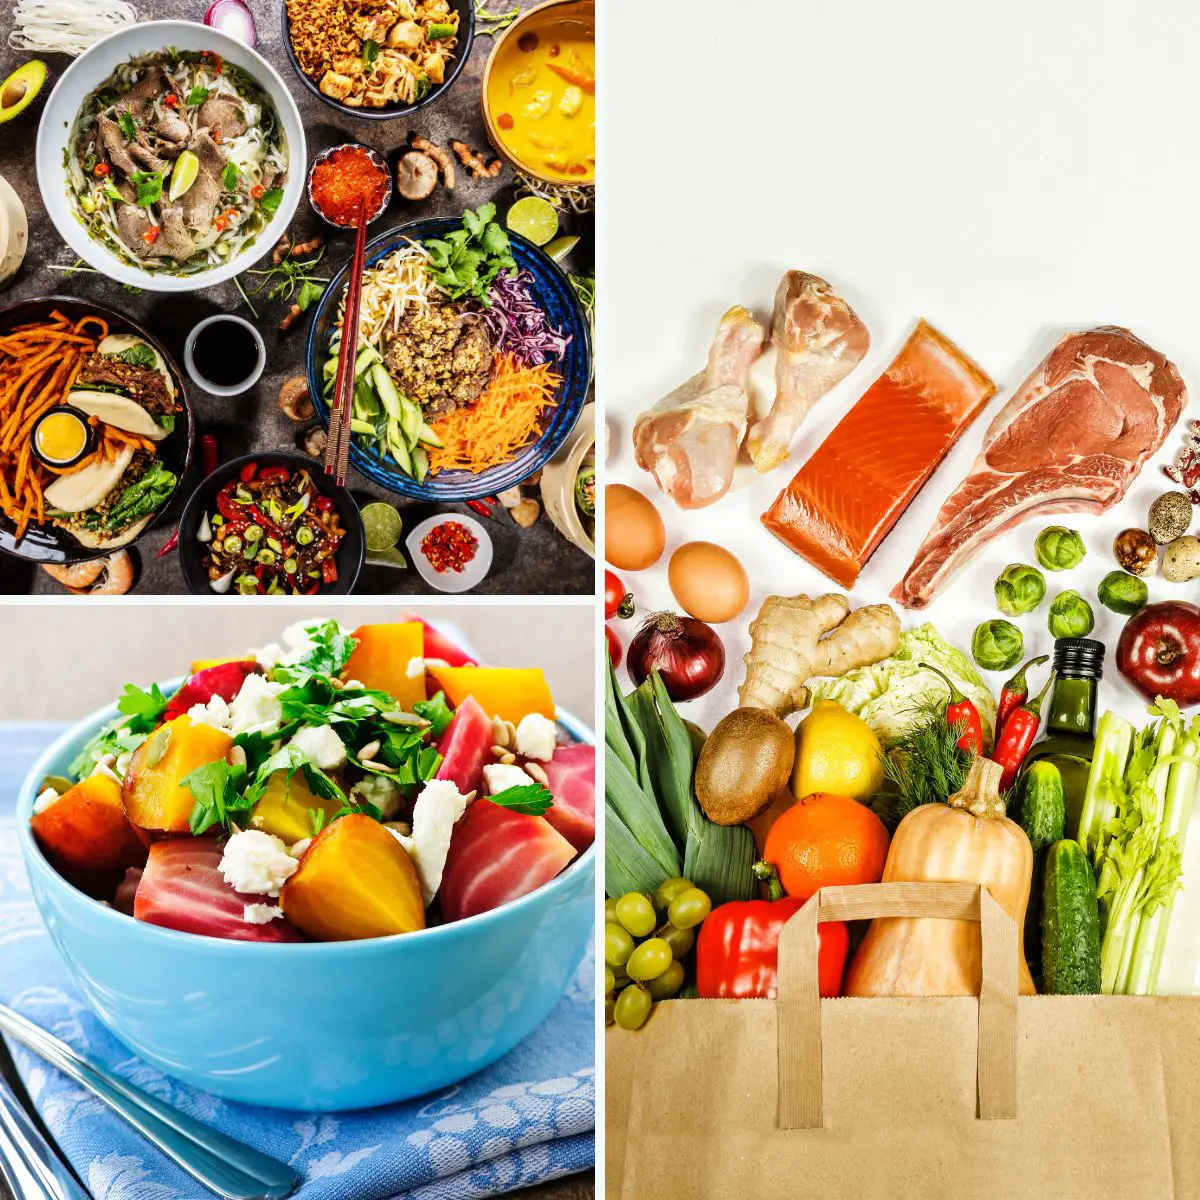 Drei verschiedene Bilder mit Essen. Auf einem Bild ein asiatisch gedeckter Tisch mit Gemüse und Fleisch. Im zweiten Bild ist eine Schale mit einem bunten Salat zu sehen. Im dritten Bild sieht man verschiedene Lebensmittel wie Fleisch und Gemüse.